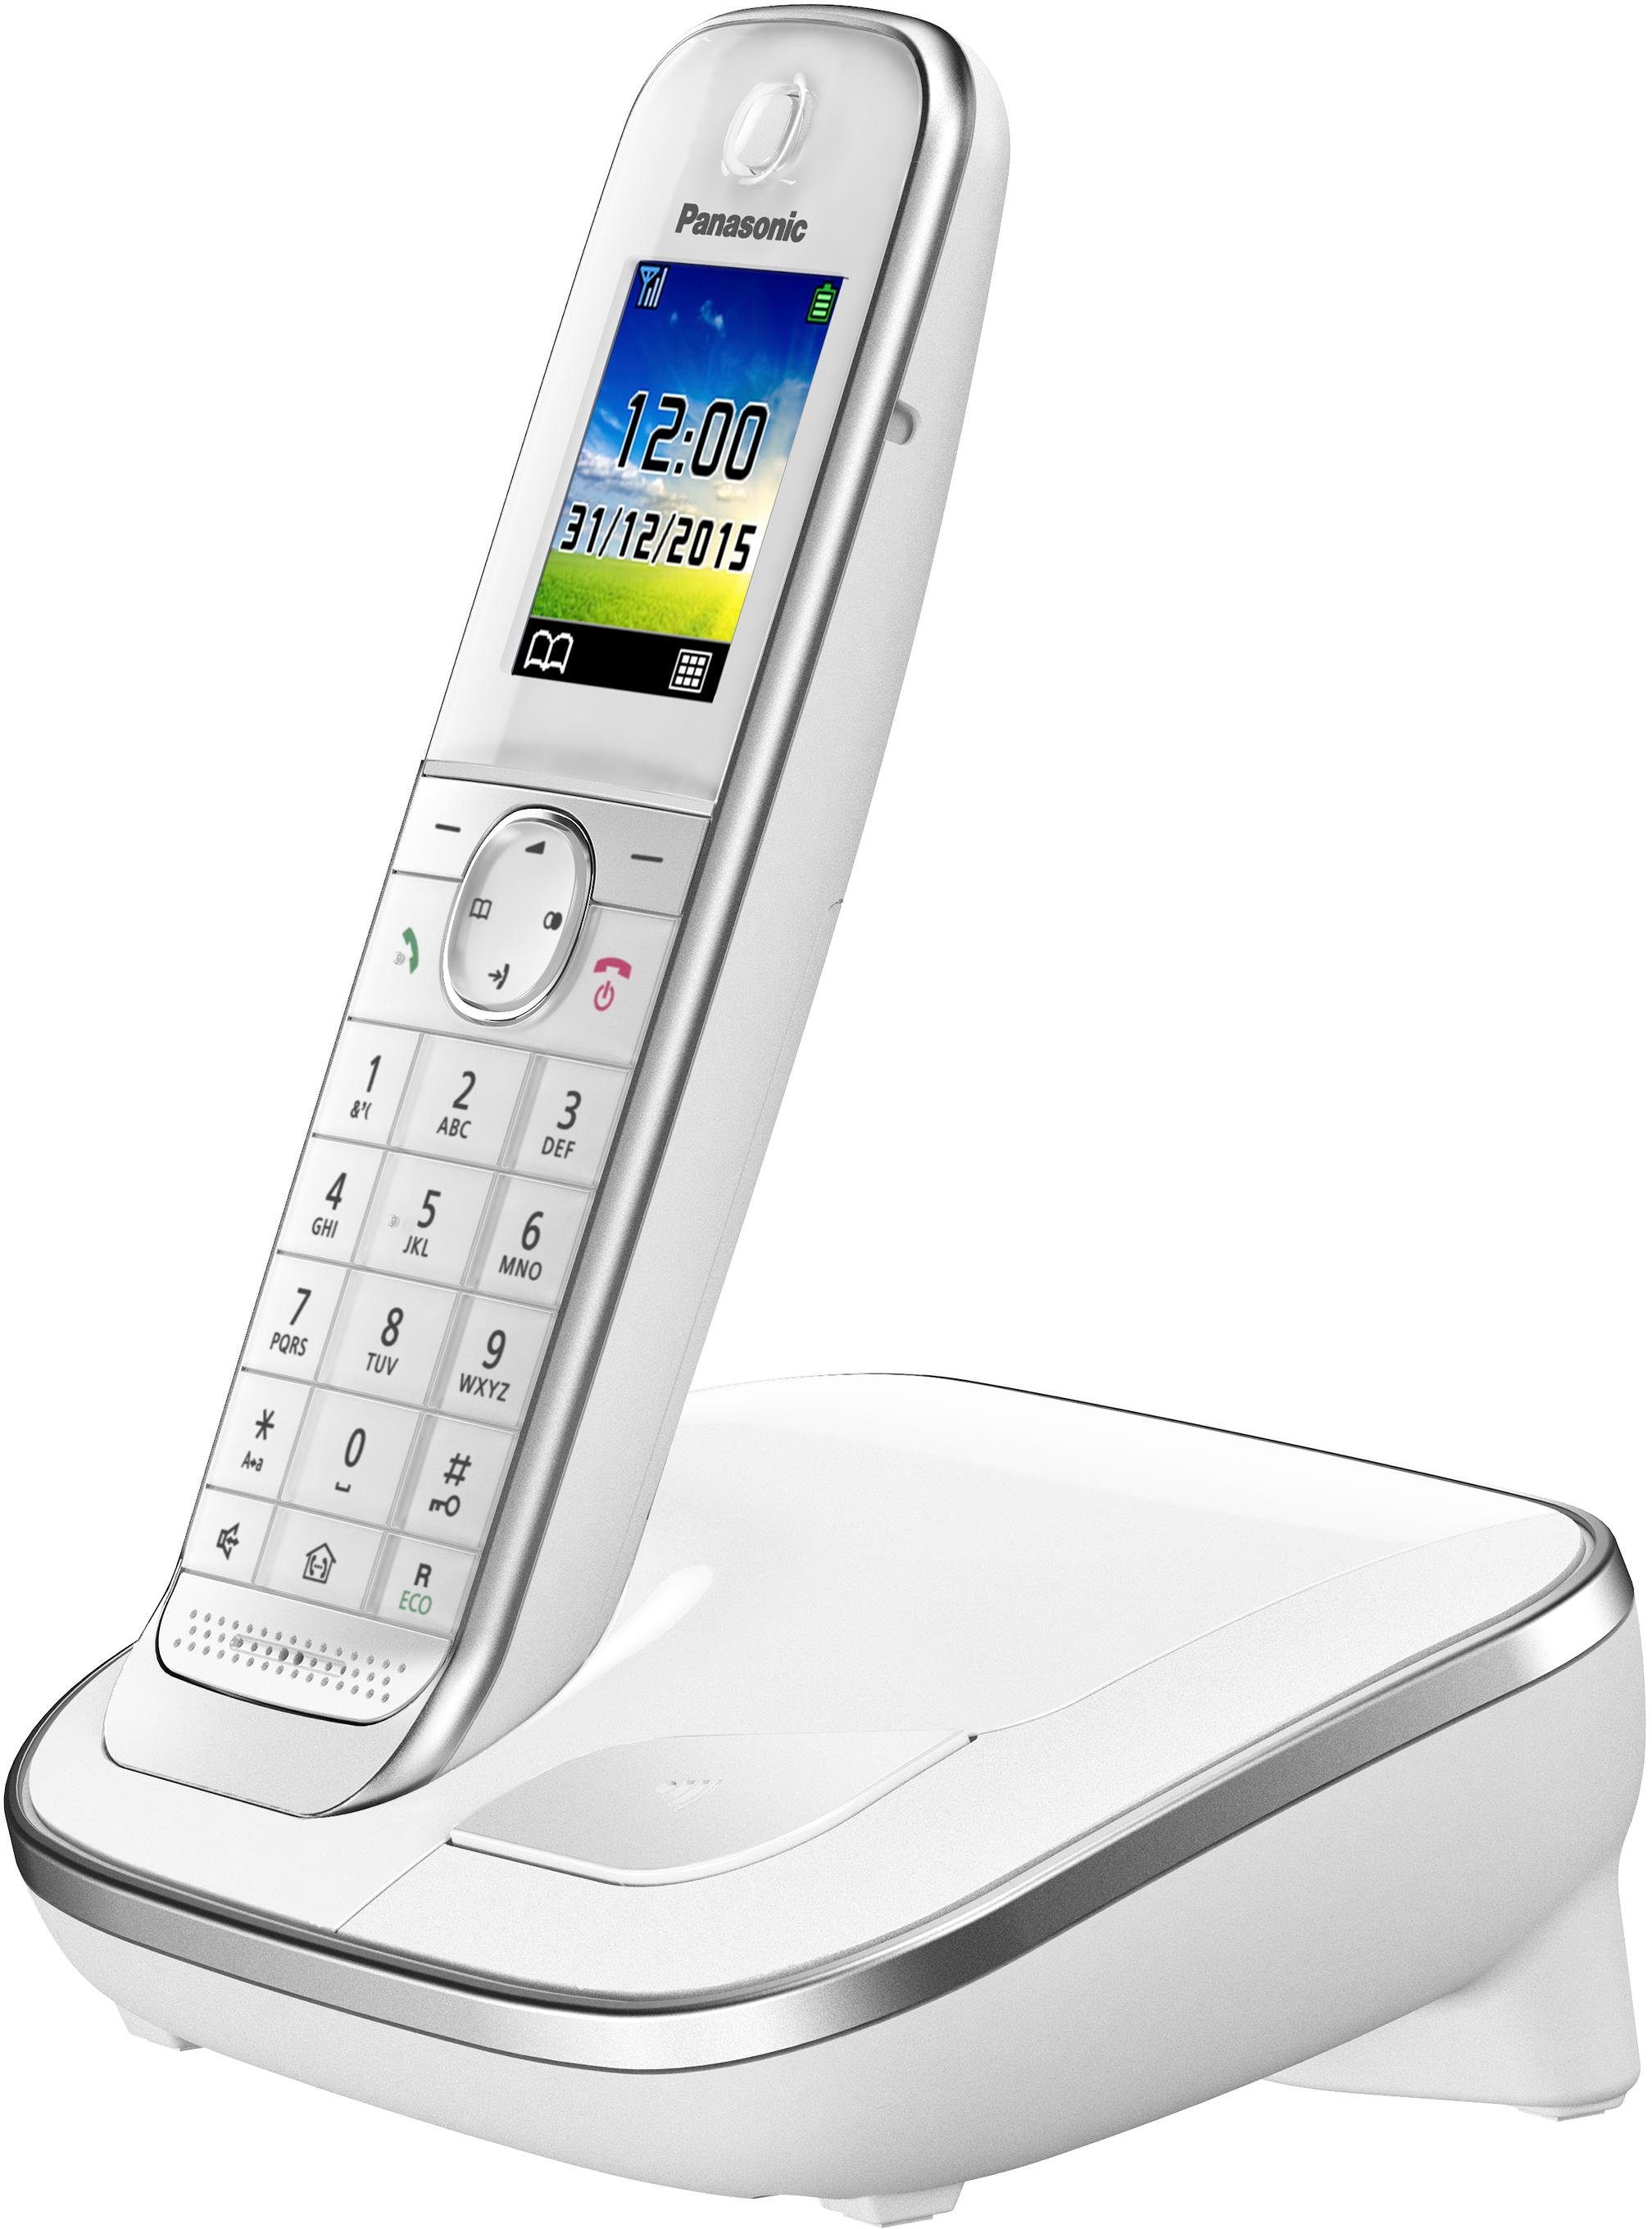 DECT-Telefon Weckfunktion, 1, weiß KX-TGJ310 Freisprechen) Panasonic Schnurloses (Mobilteile: